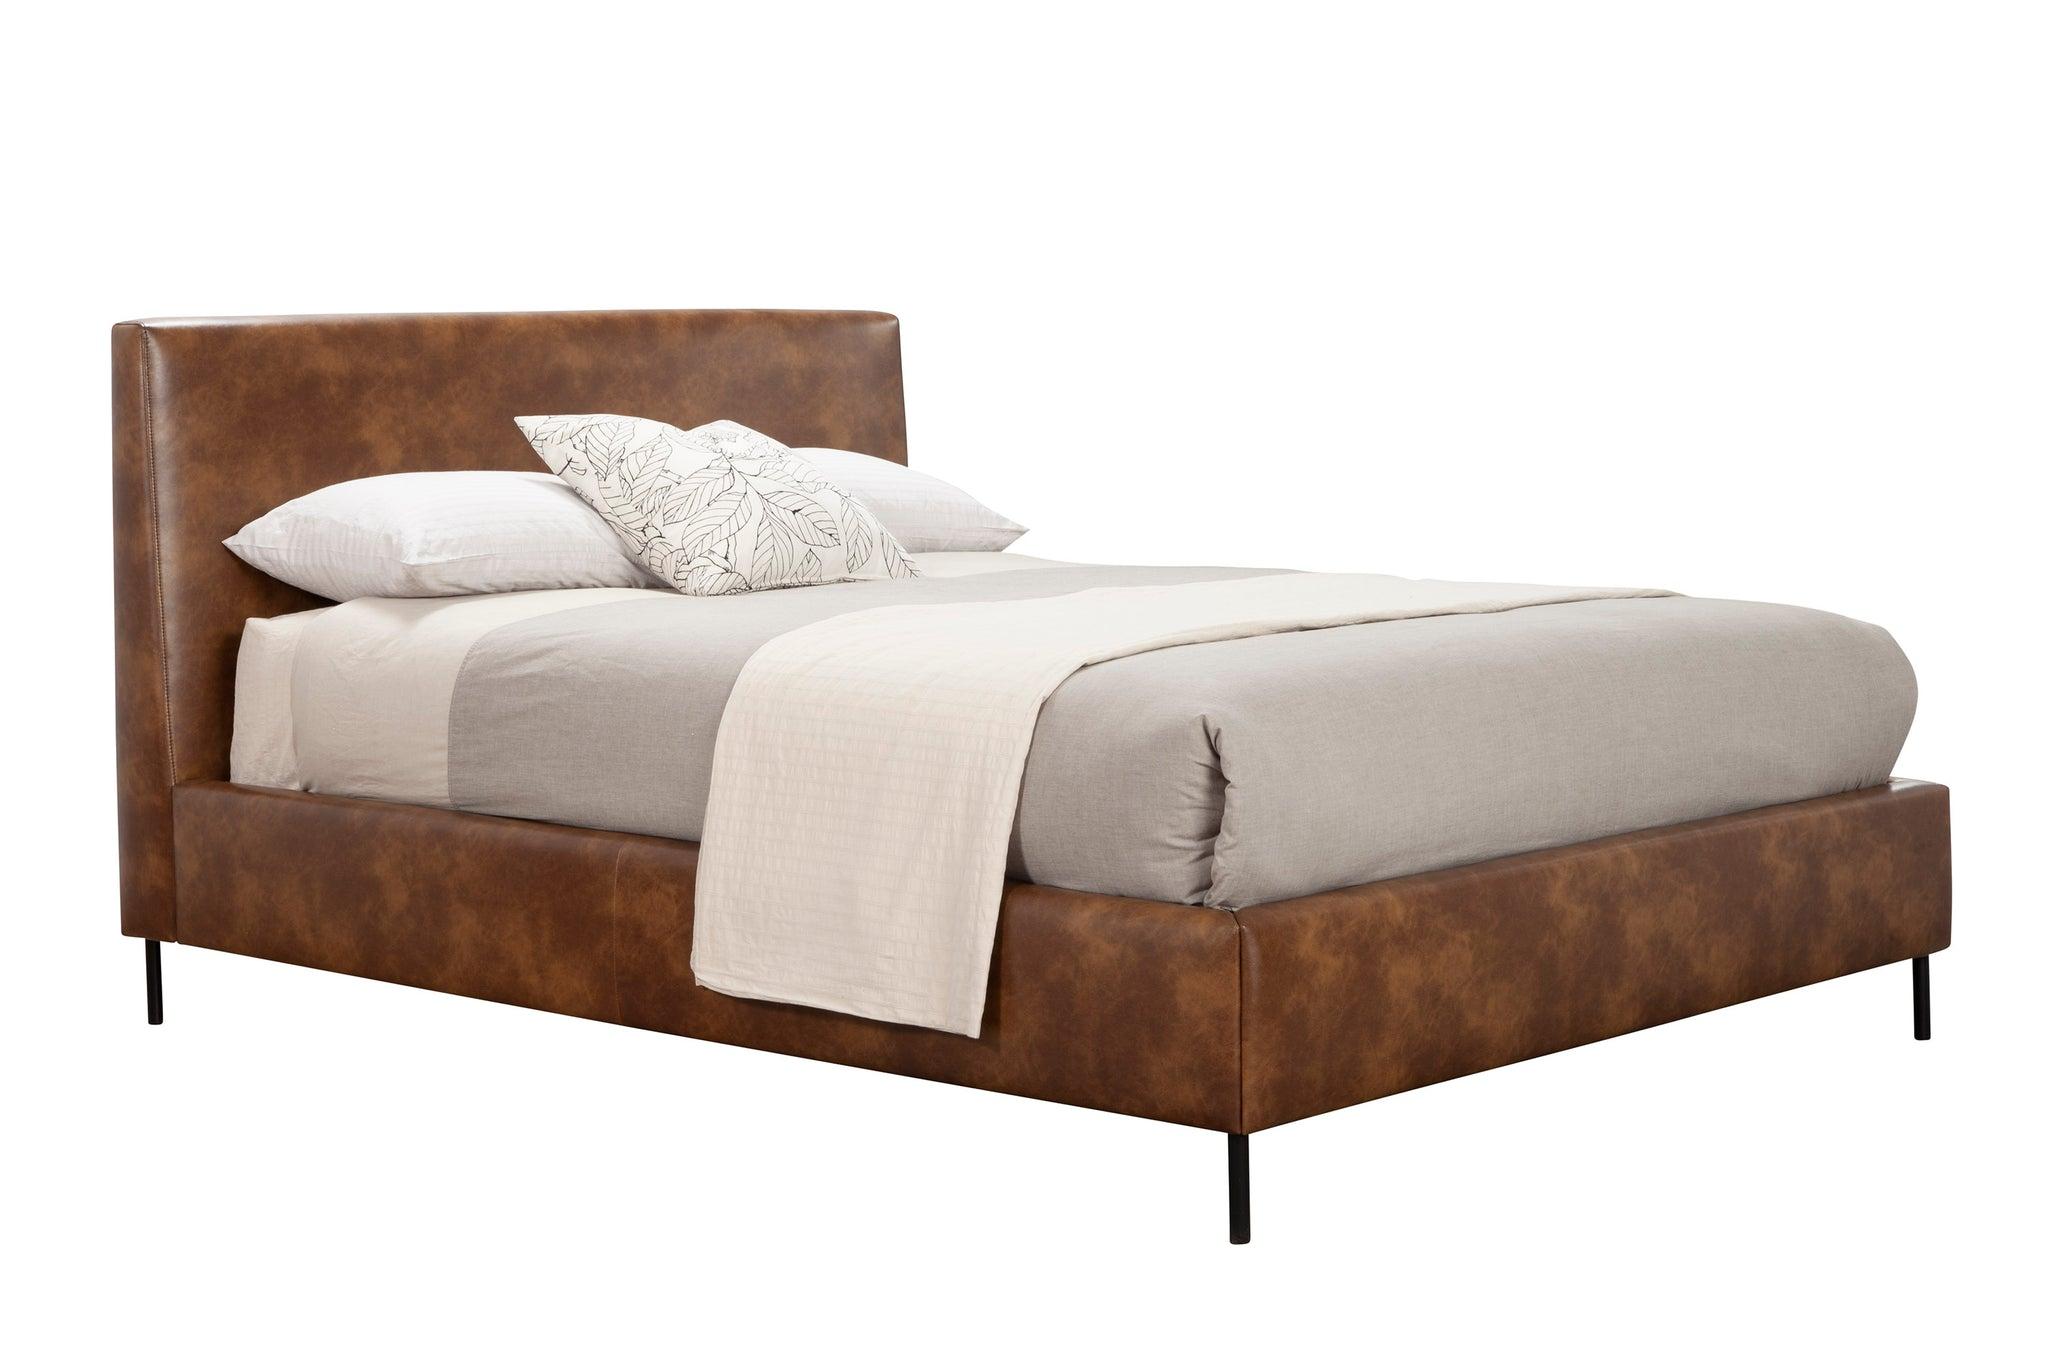 Modern, Rustic Platform Bed SOPHIA 6902EK-BRN in Brown Faux Leather